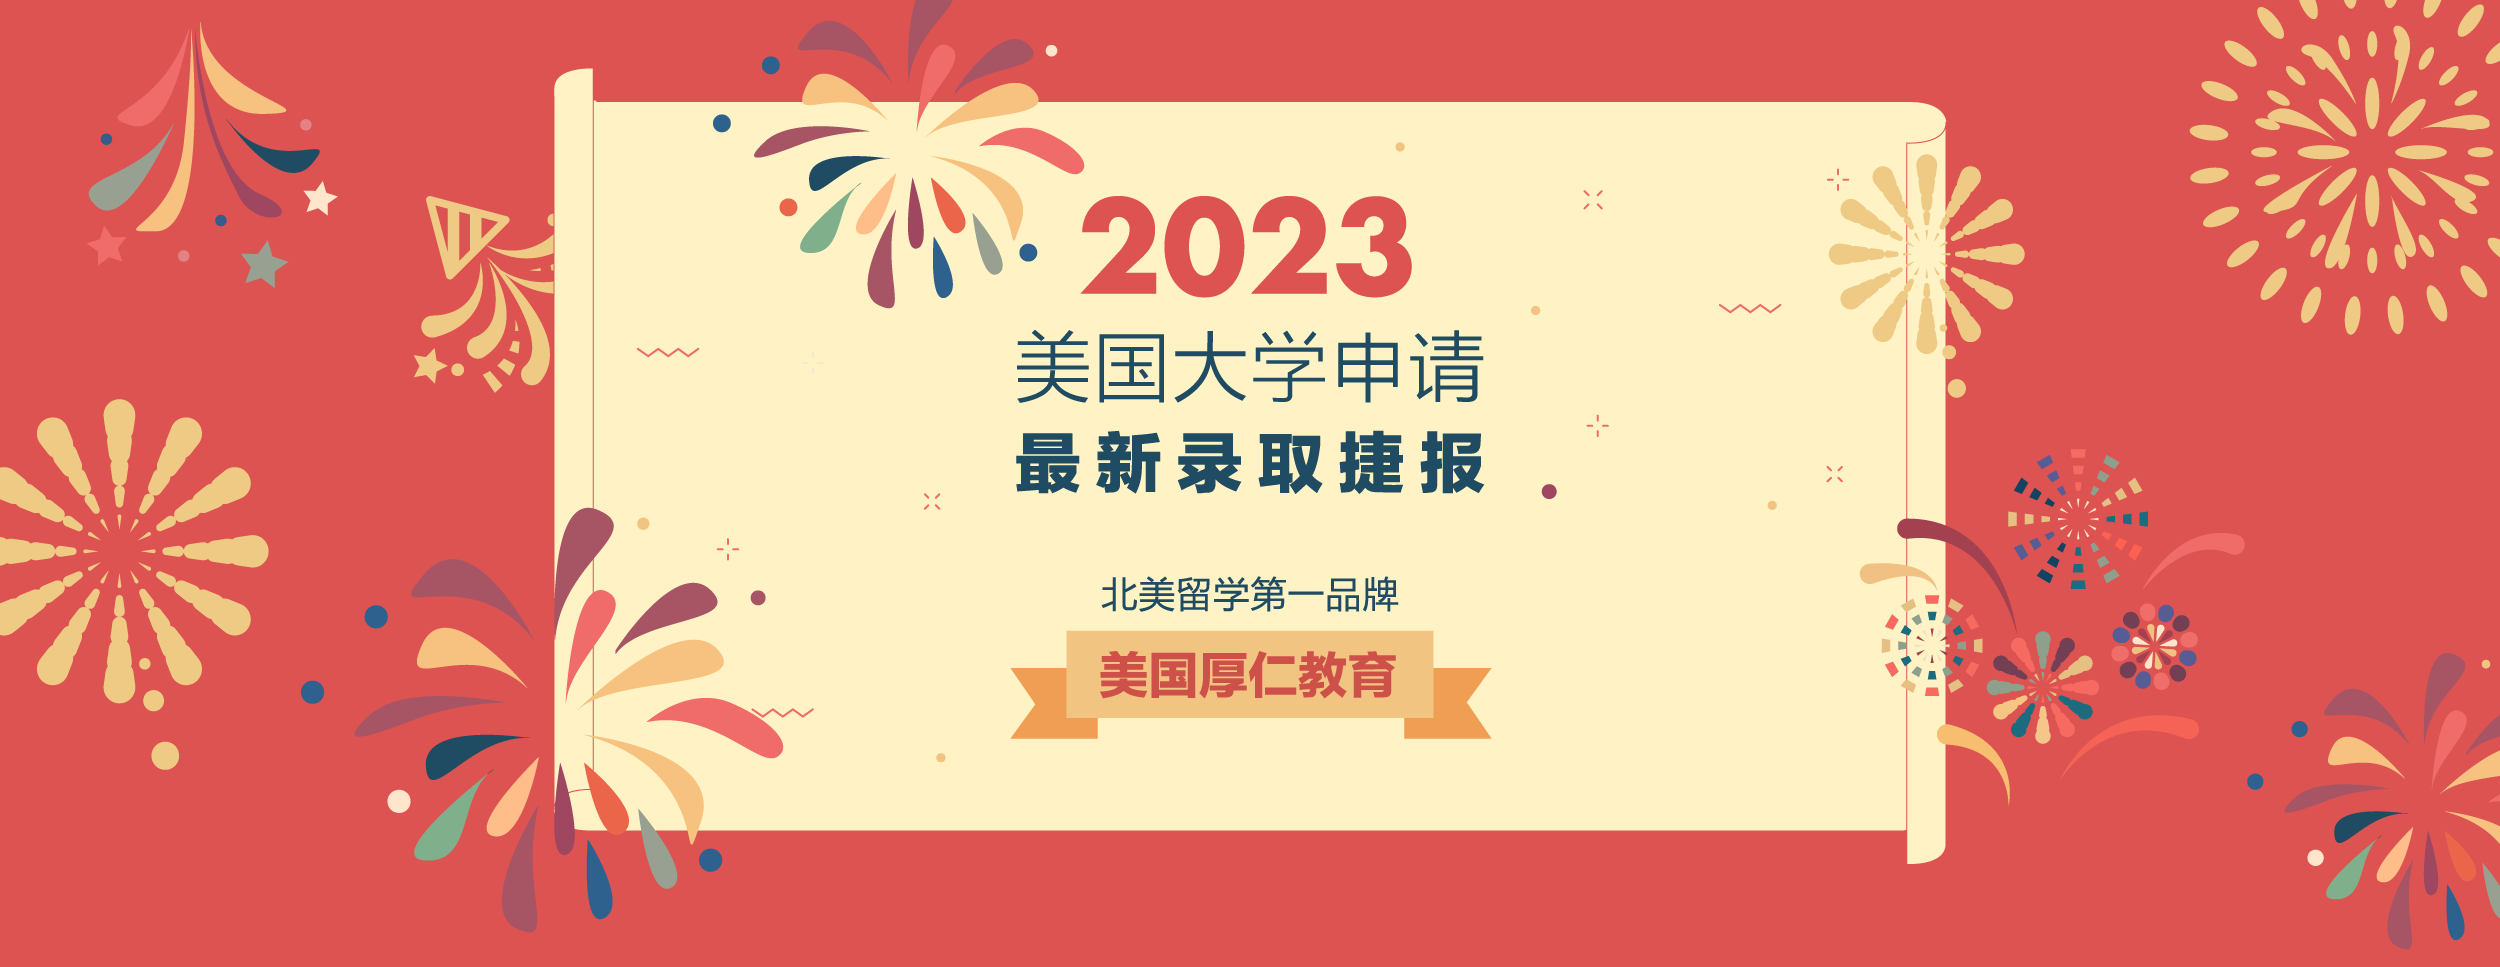 2023官网banner